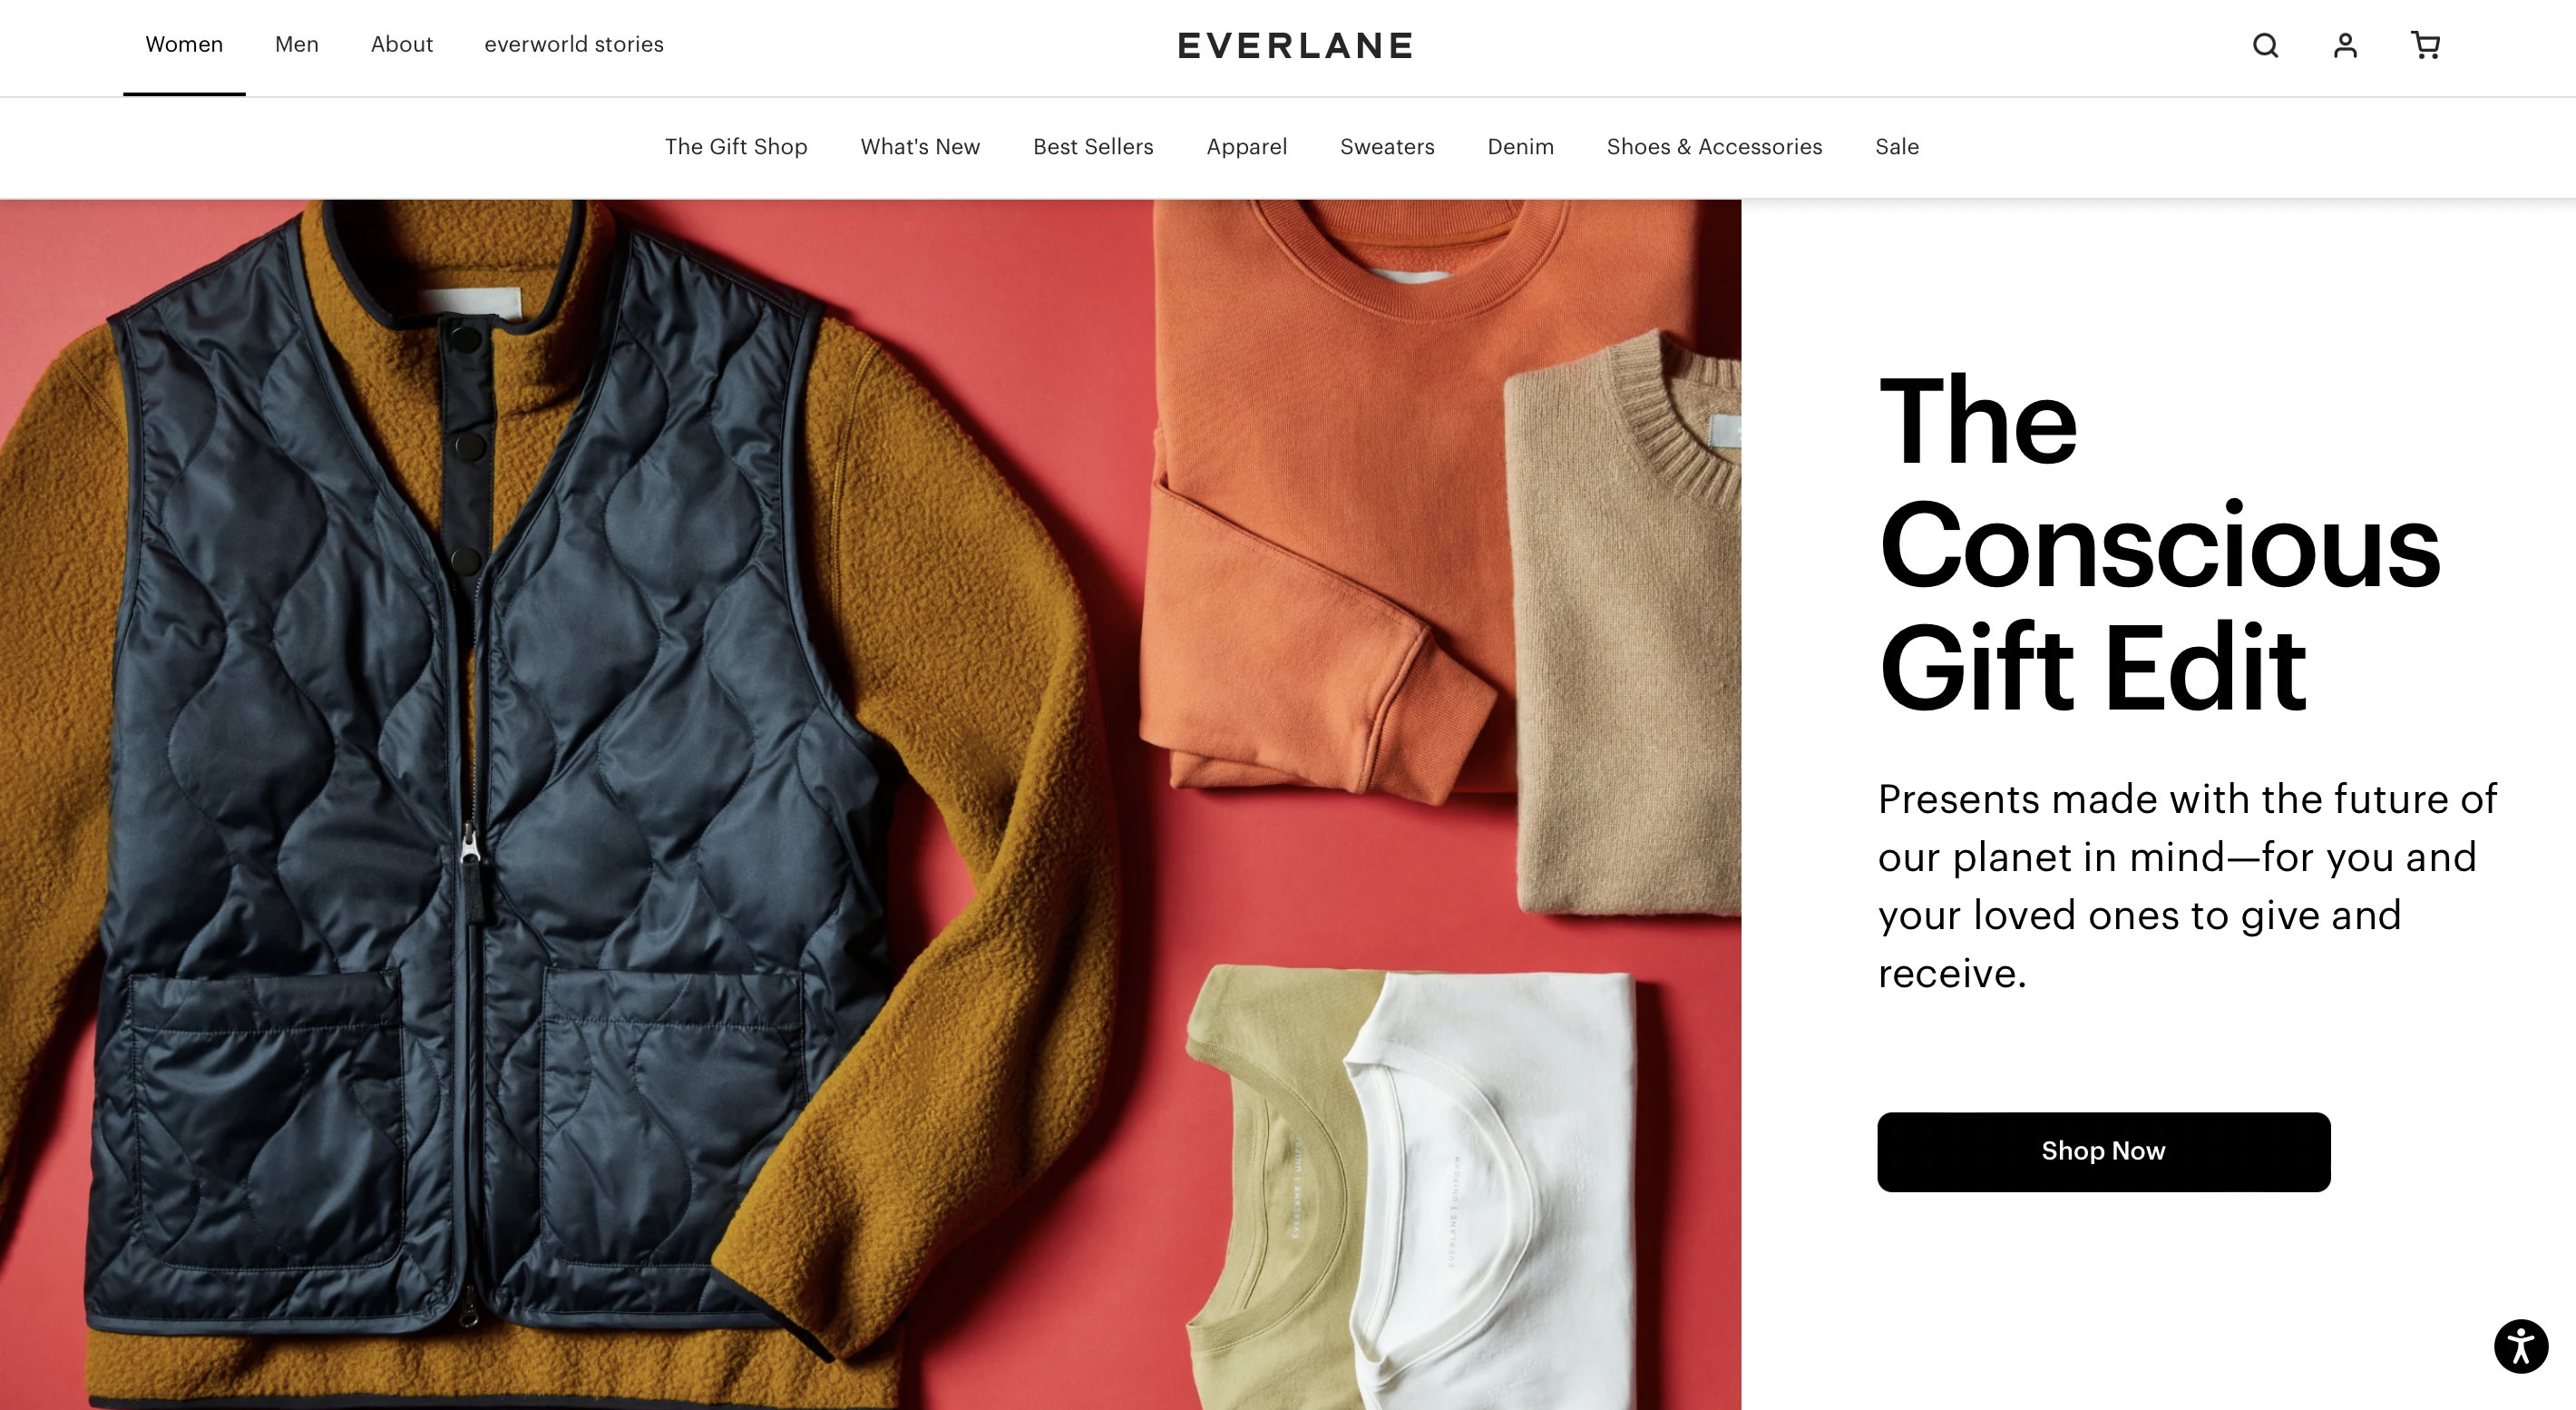 美国互联网时尚品牌Everlane获得2500万美元贷款